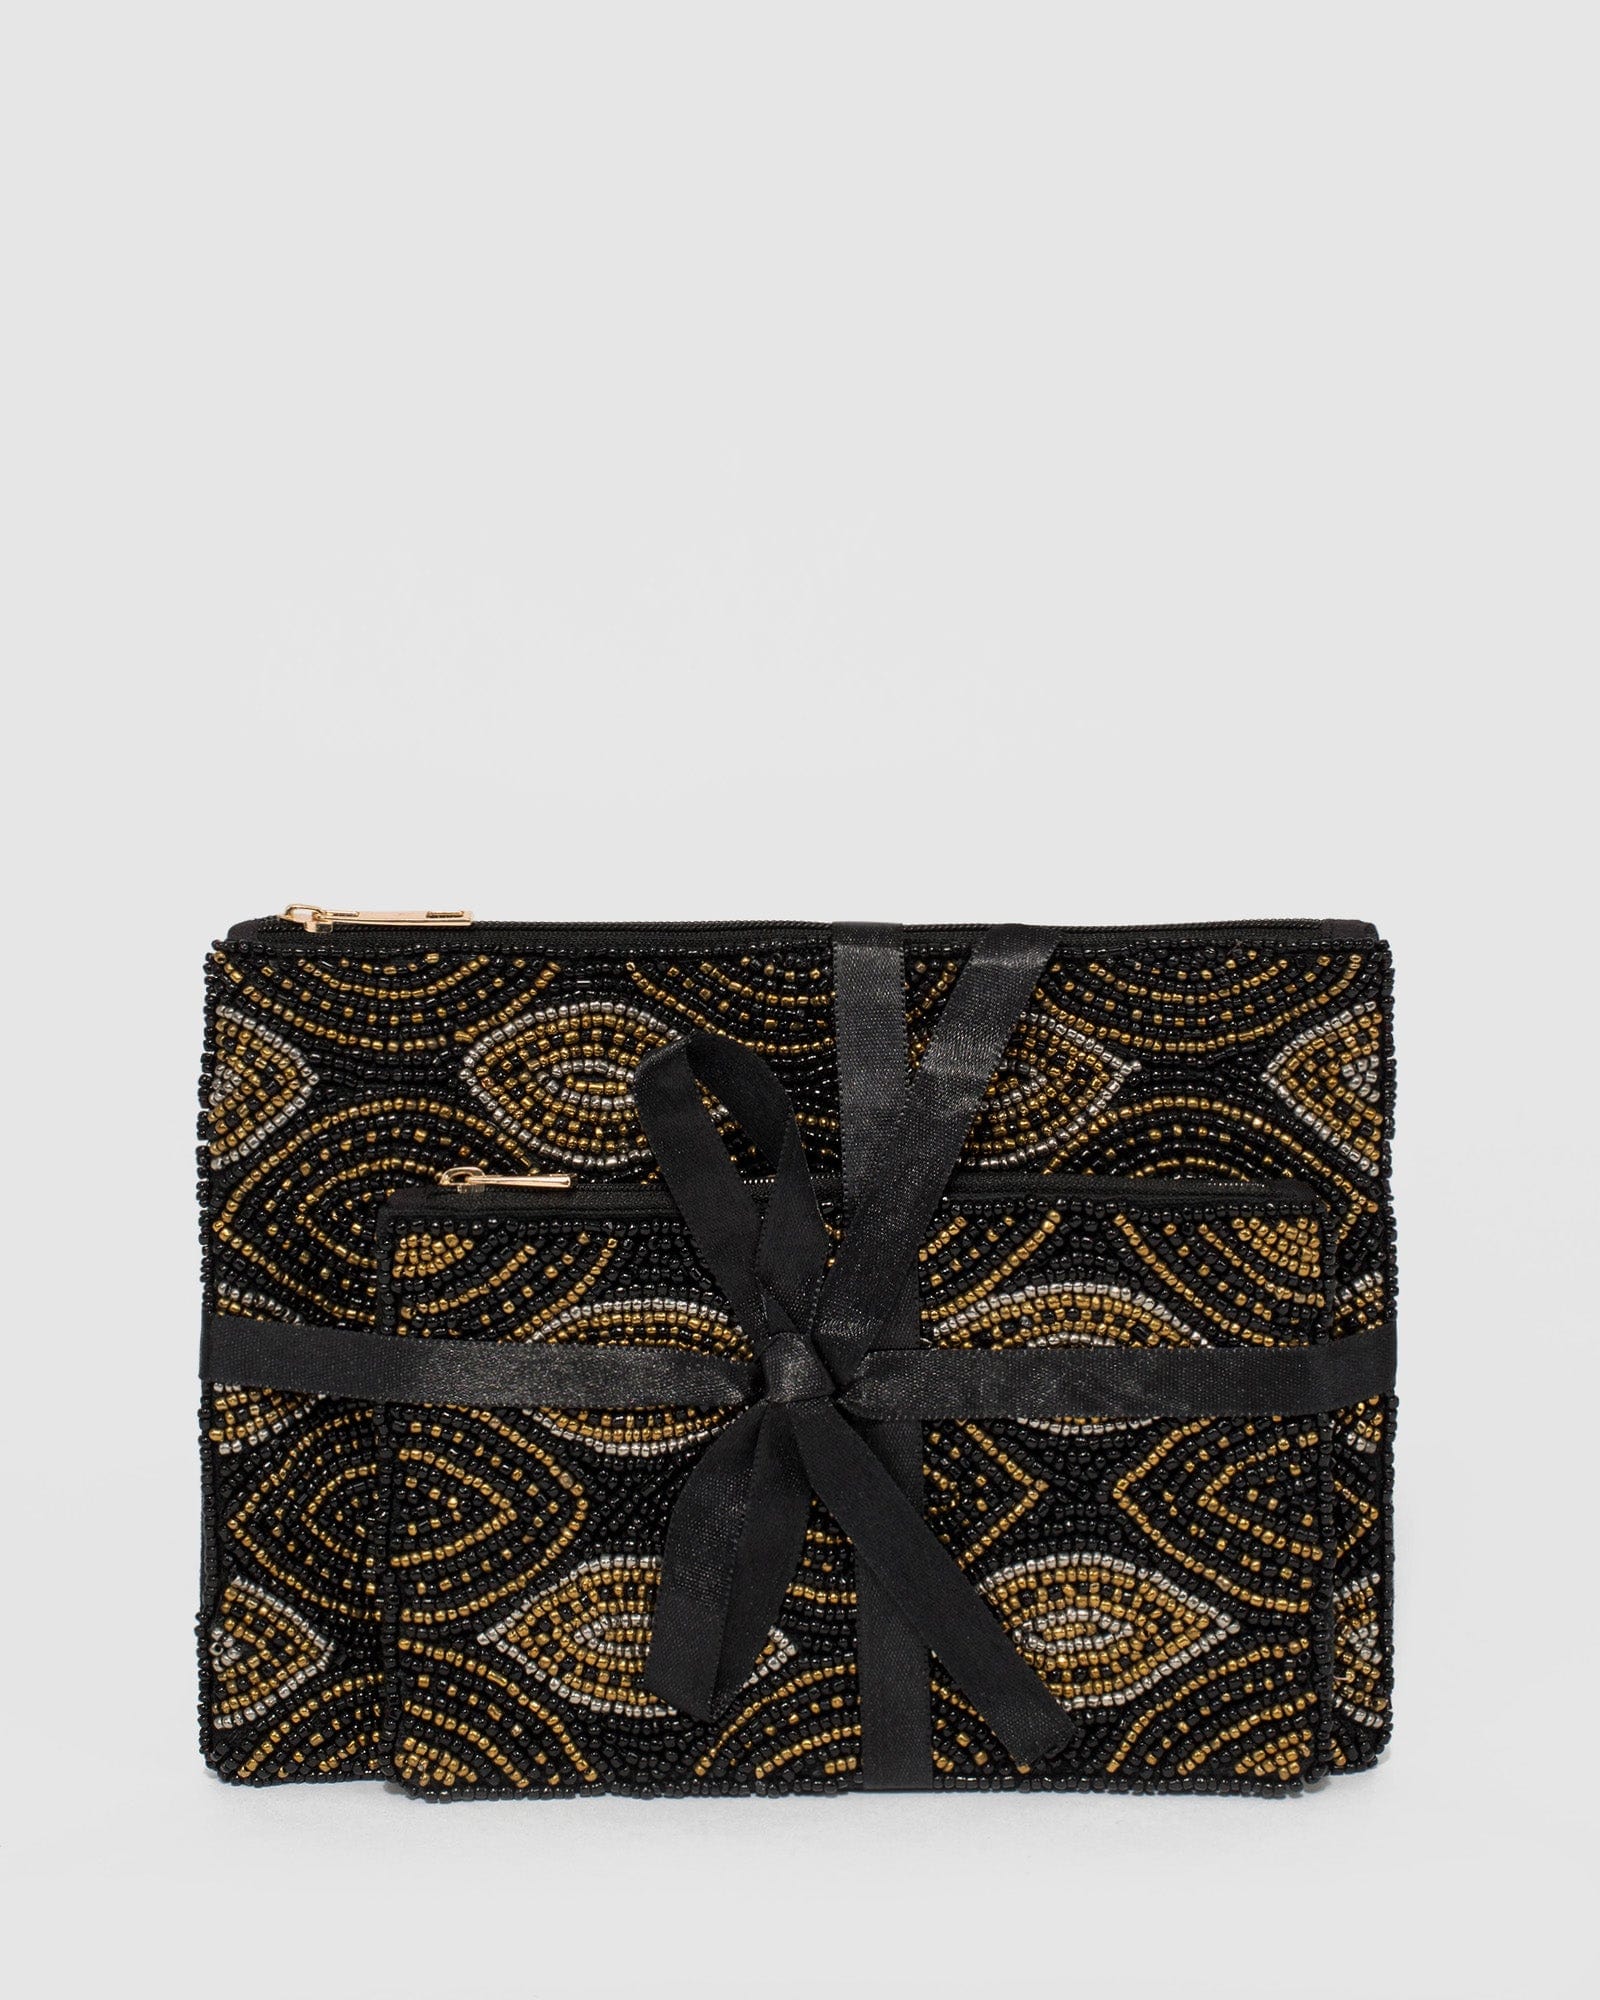 COLETTE BY COLETTE Hayman Faux Snake Skin Animal Print Clutch Handbag Purse  Bag $29.94 - PicClick AU